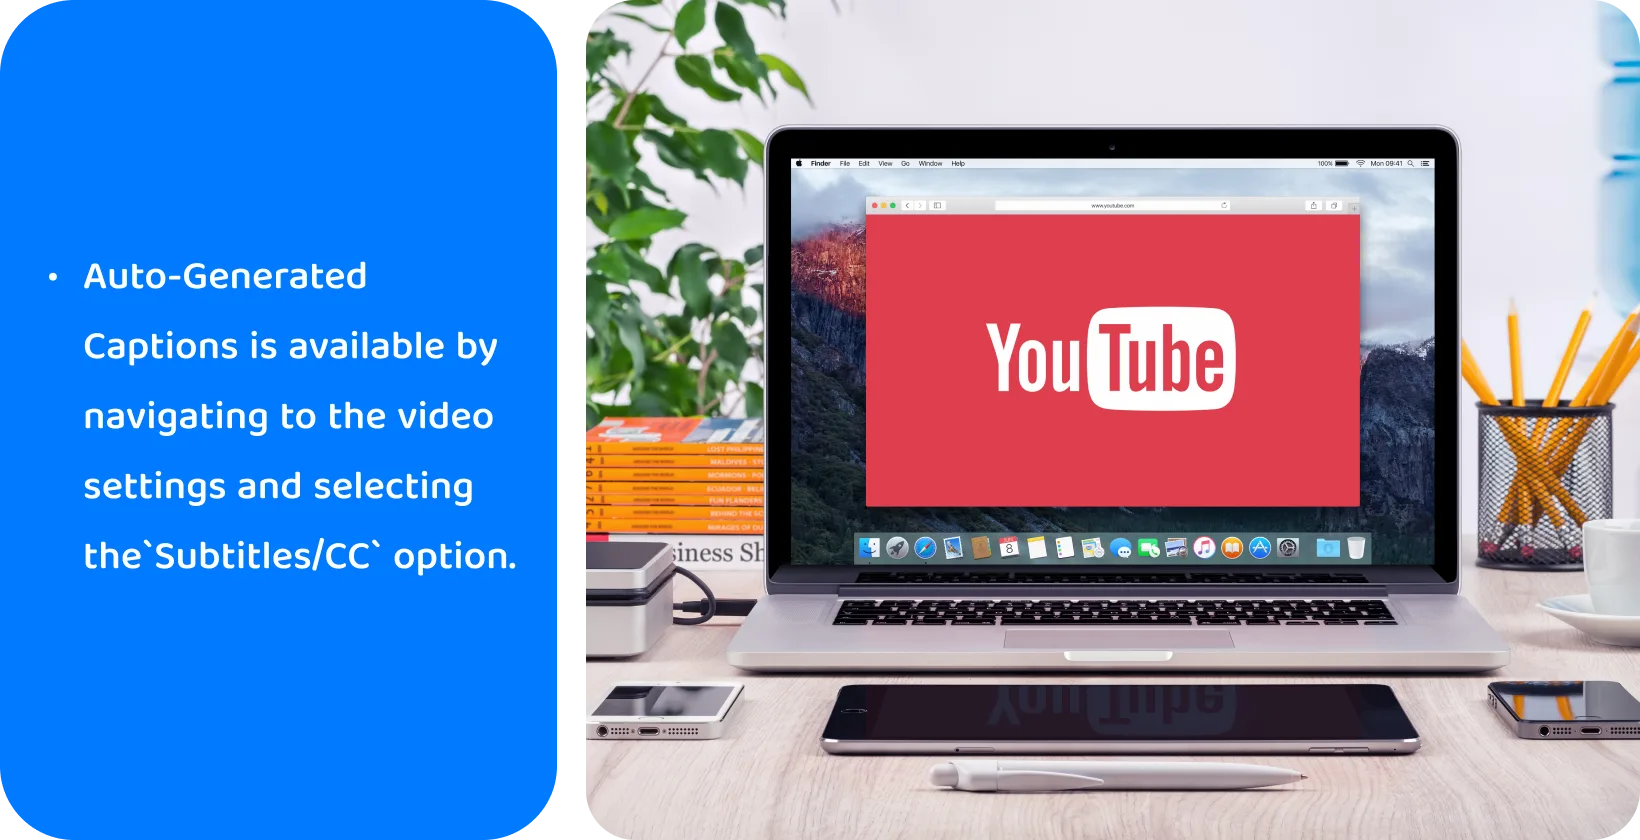 YouTube na obrazovce notebooku a propaguje použití automaticky generovaných titulků pro usnadnění přístupu a SEO videa.